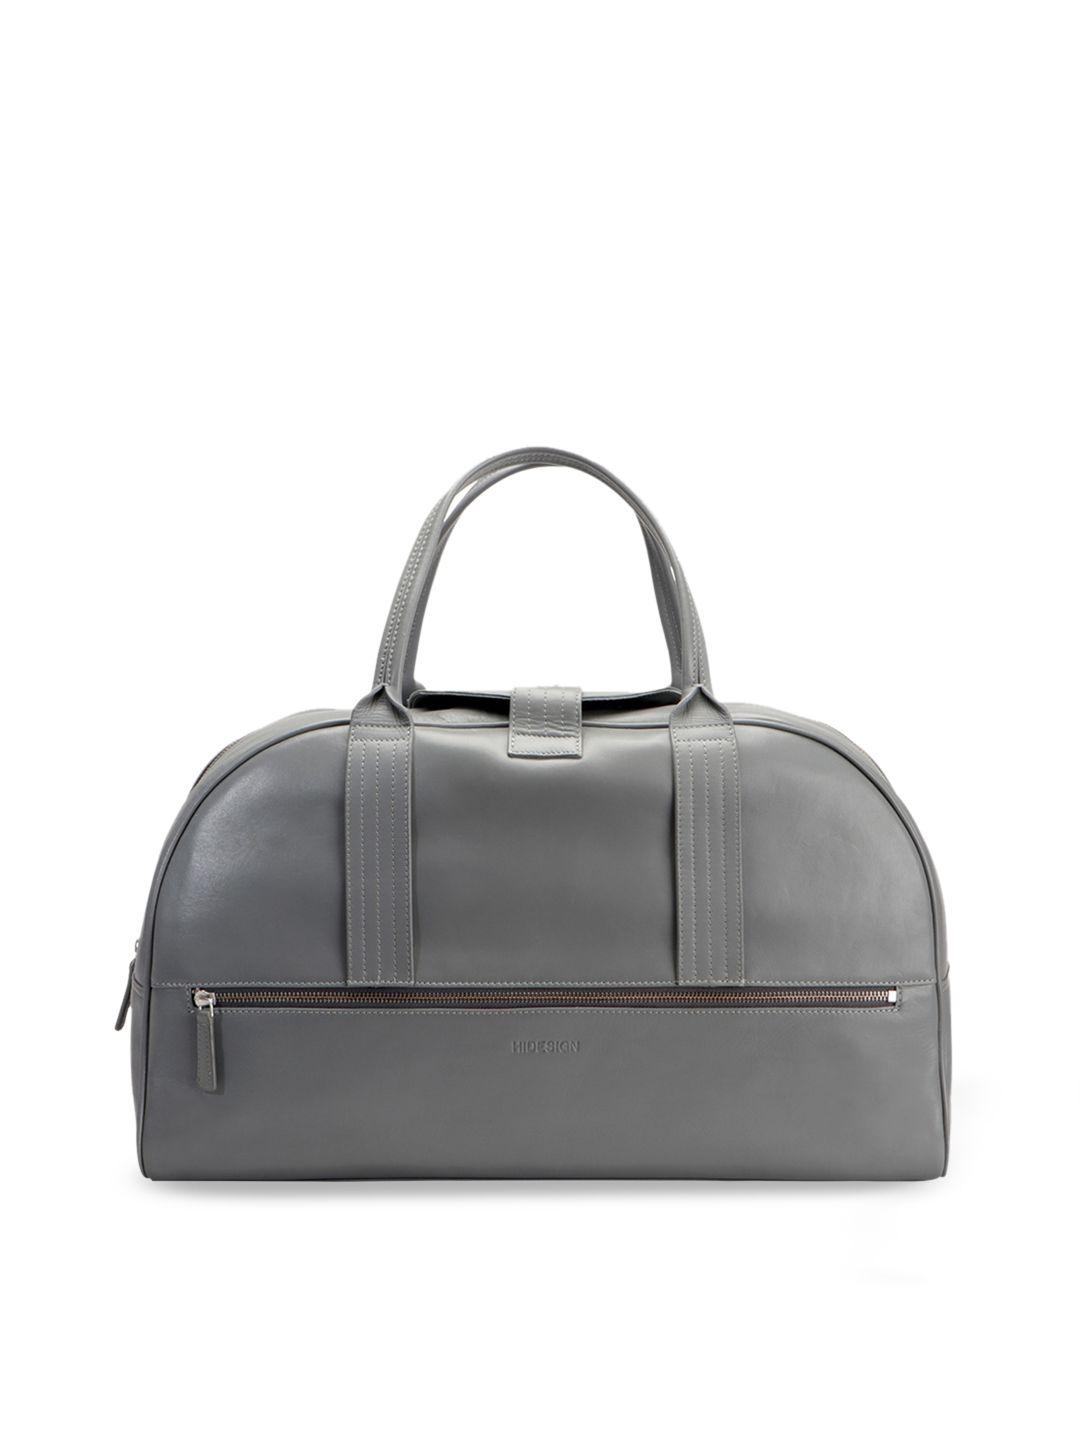 hidesign-men-grey-solid-leather-duffel-bag